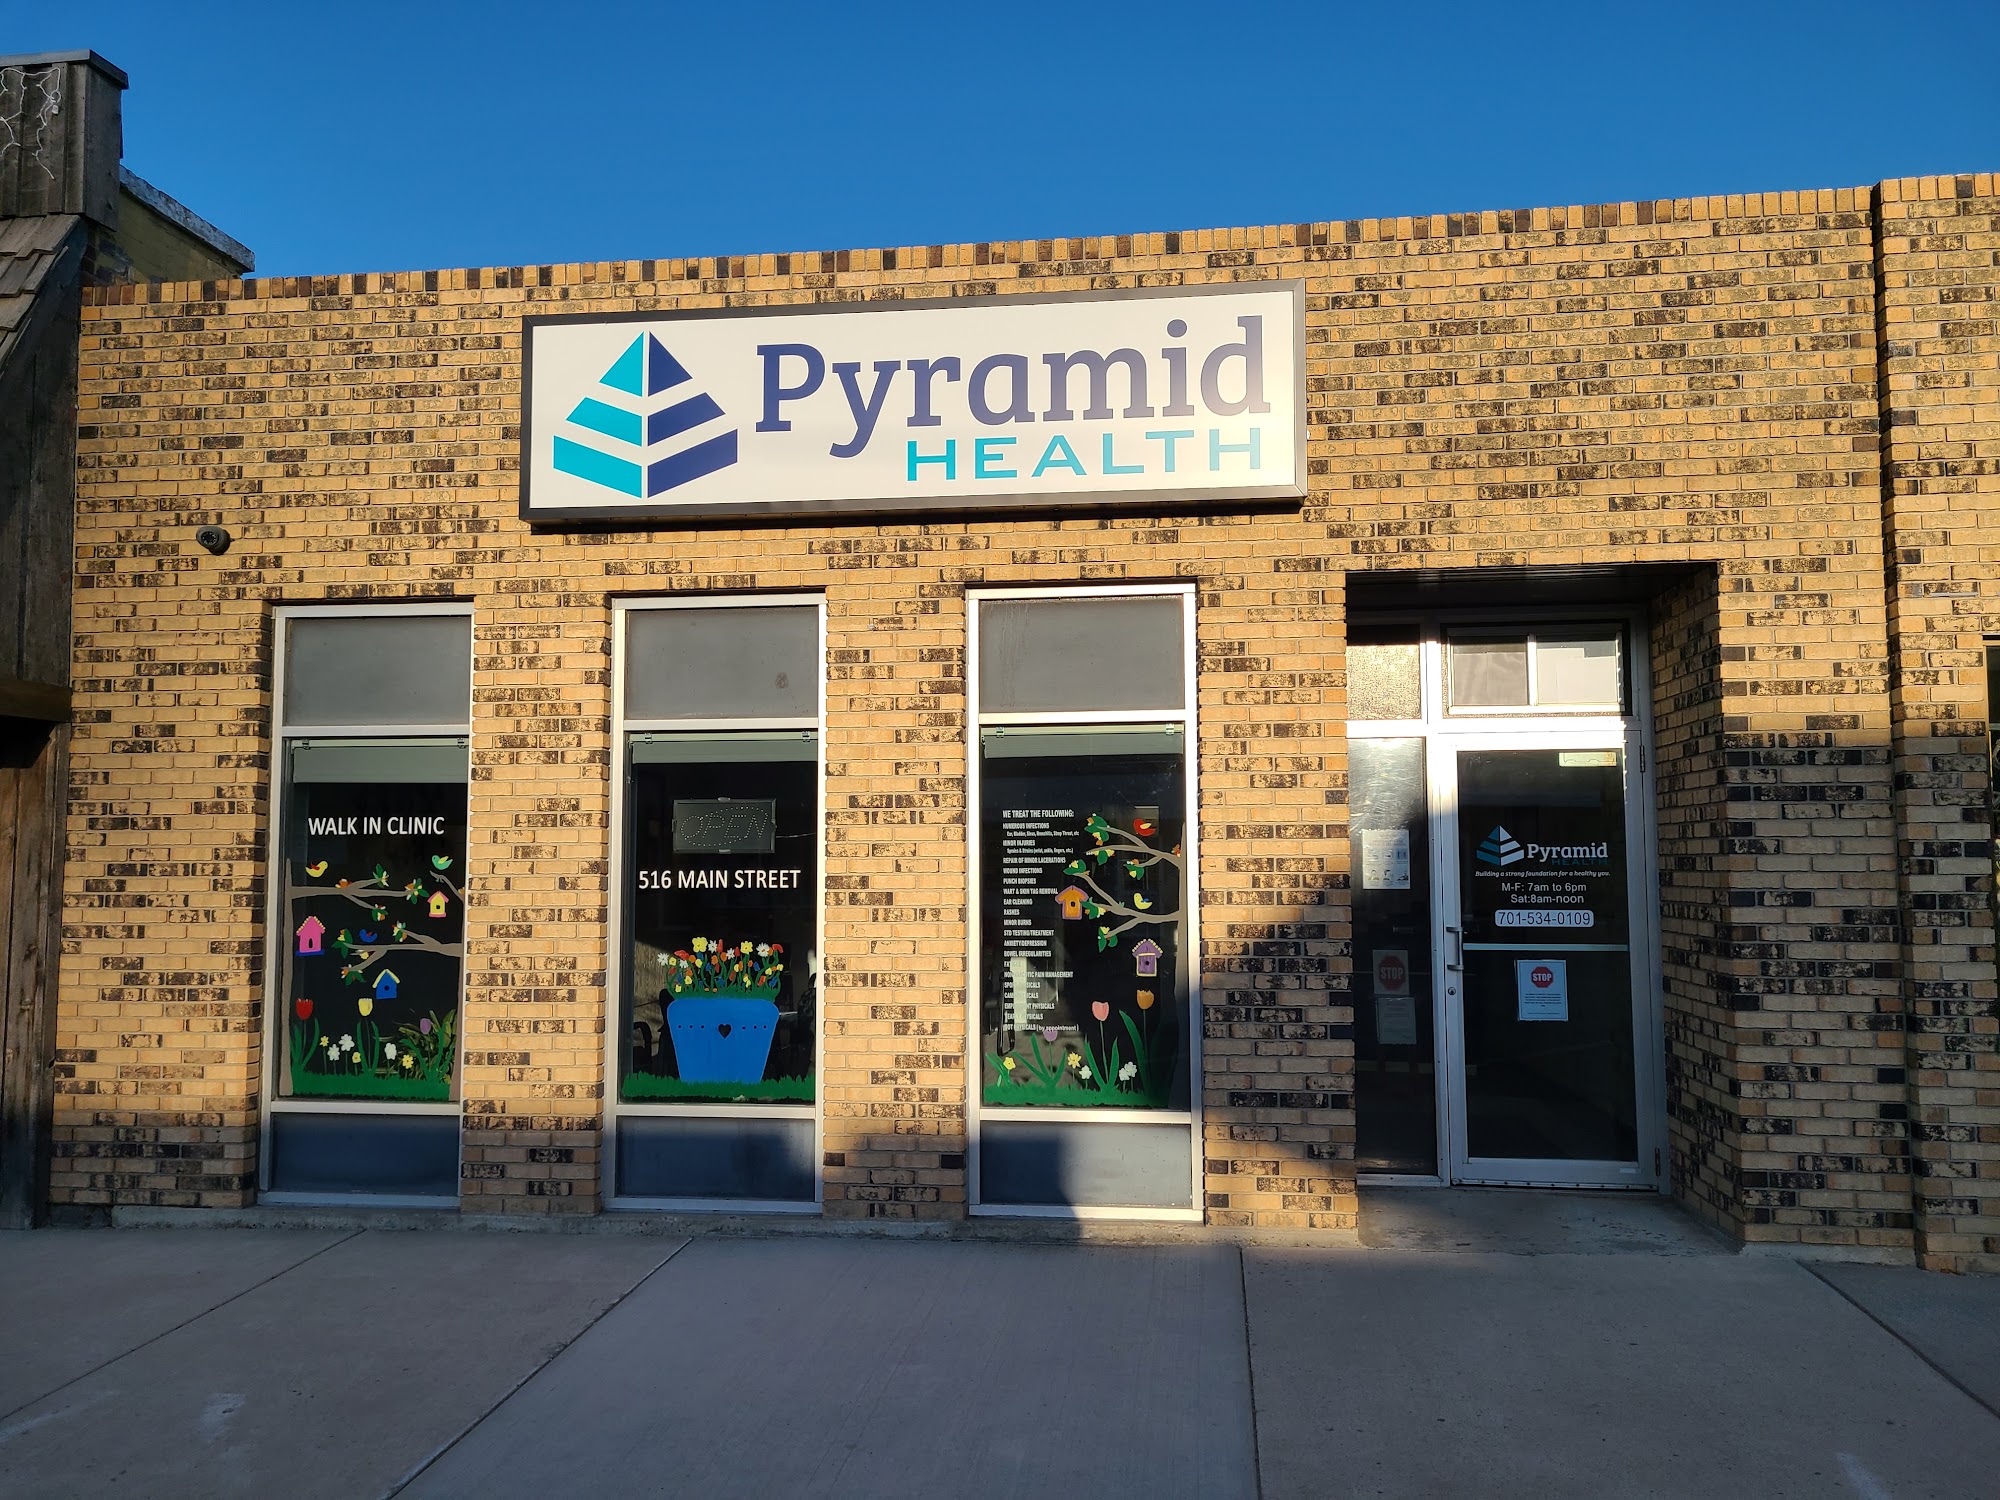 Pyramid Health 516 Main St, Bottineau North Dakota 58318